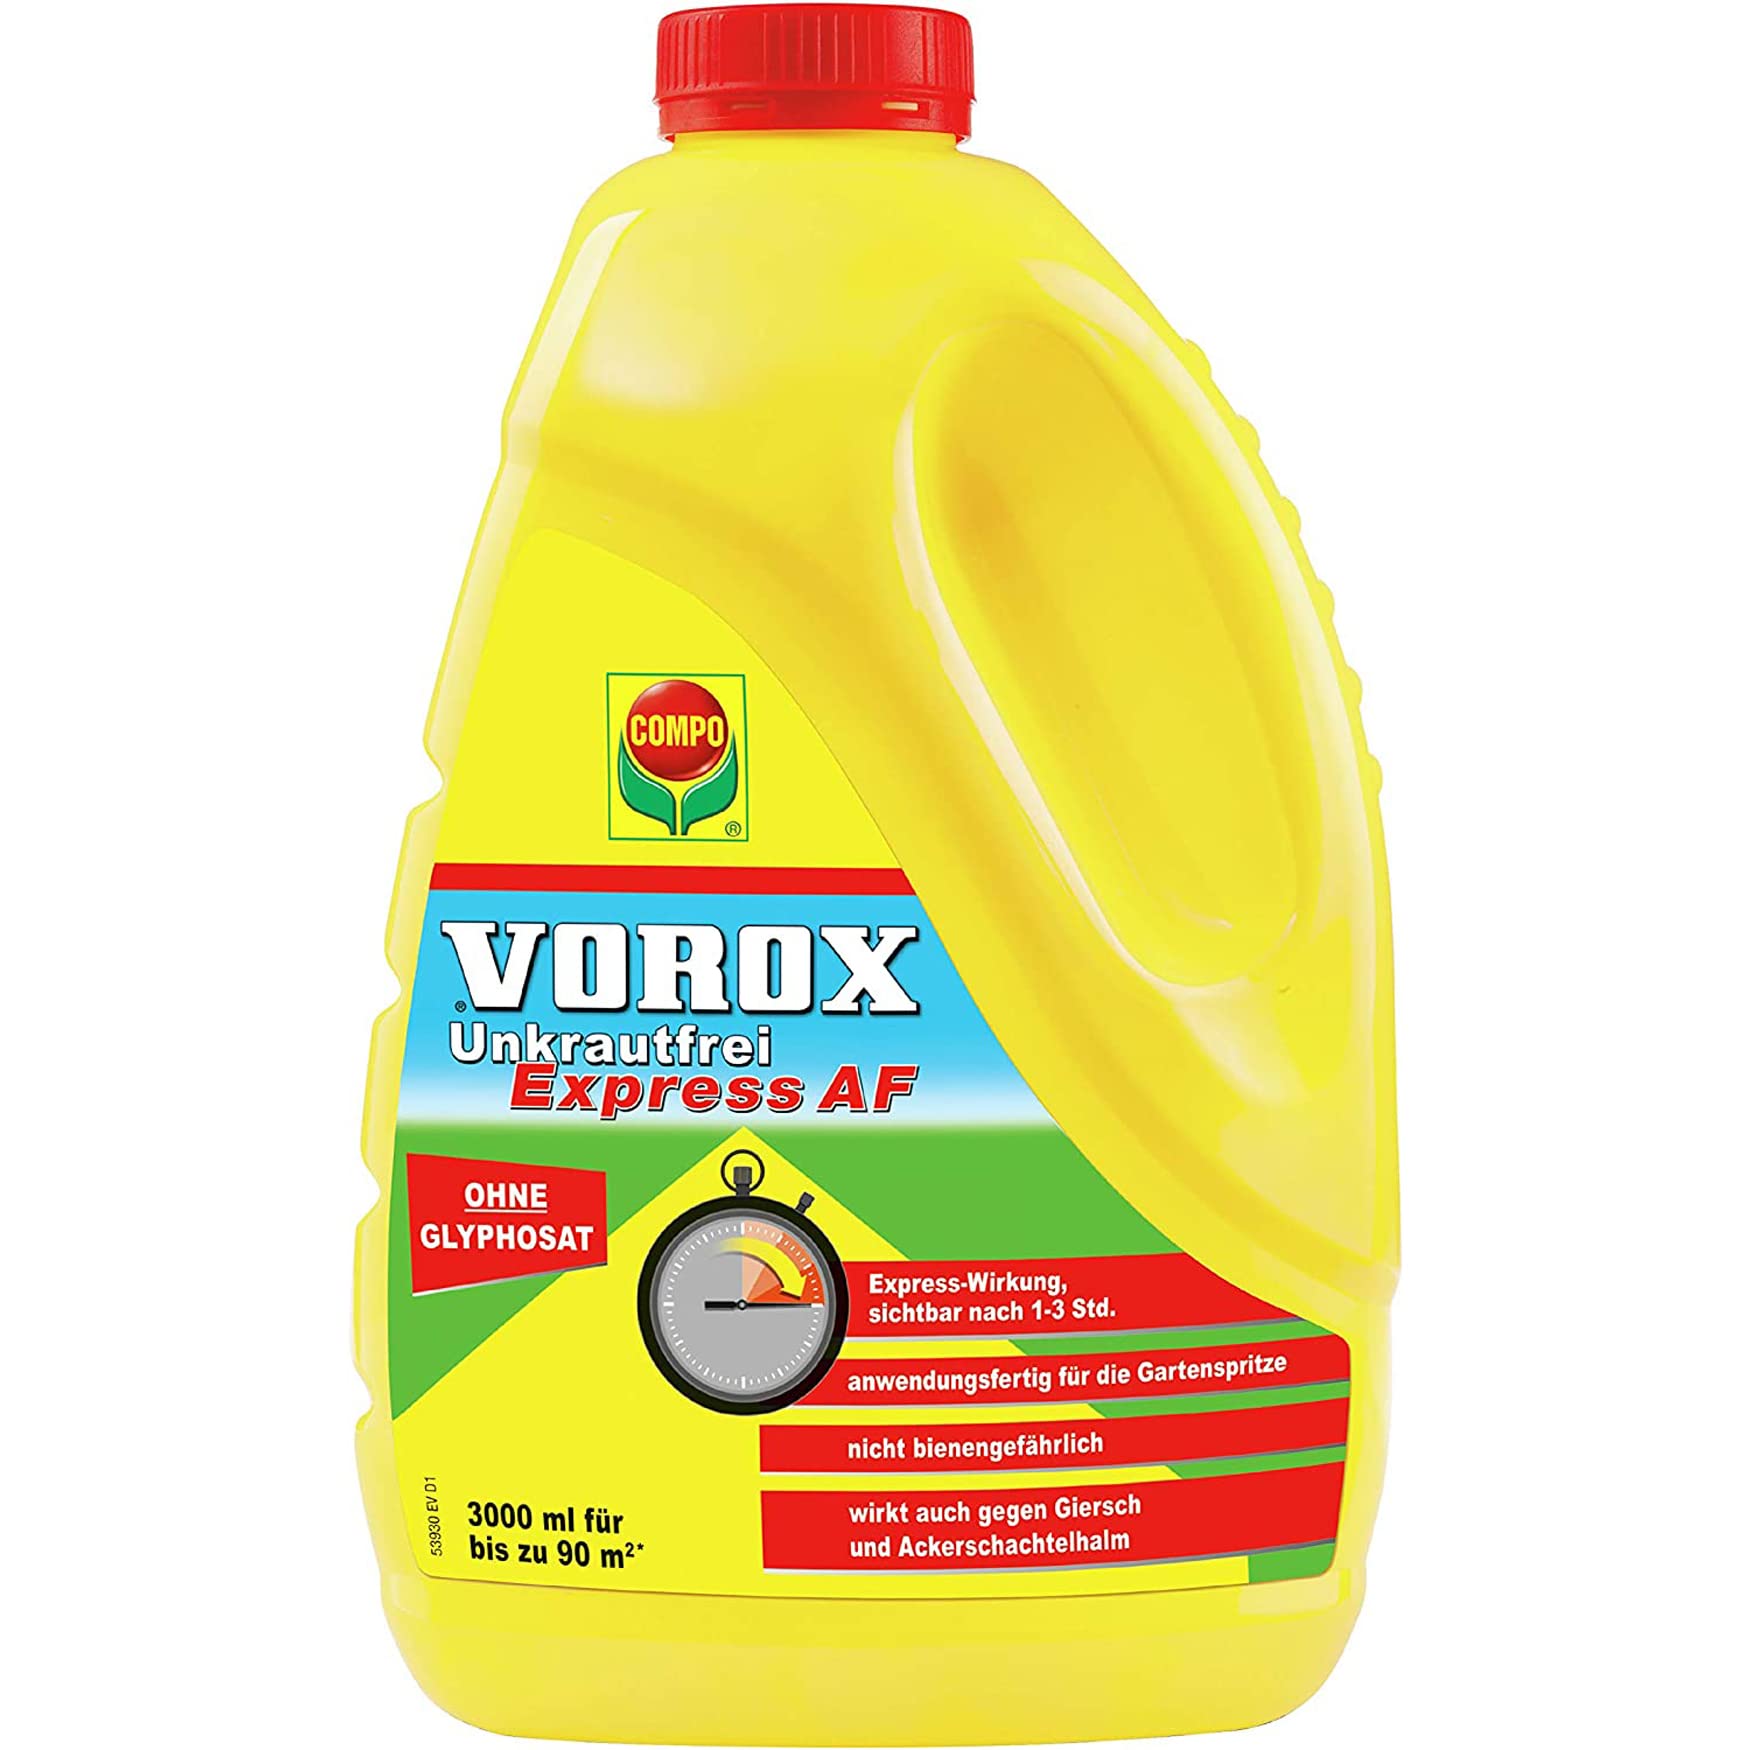 VOROX Unkrautfrei Express - anwendungsfertiger Unkrautvernichter - bekämpft Unkraut, Algen & Moos - wirkt gegen mehr als 50 Unkräuter - Anwendung zwischen Gemüse- und Zierpflanzen - 3 Liter